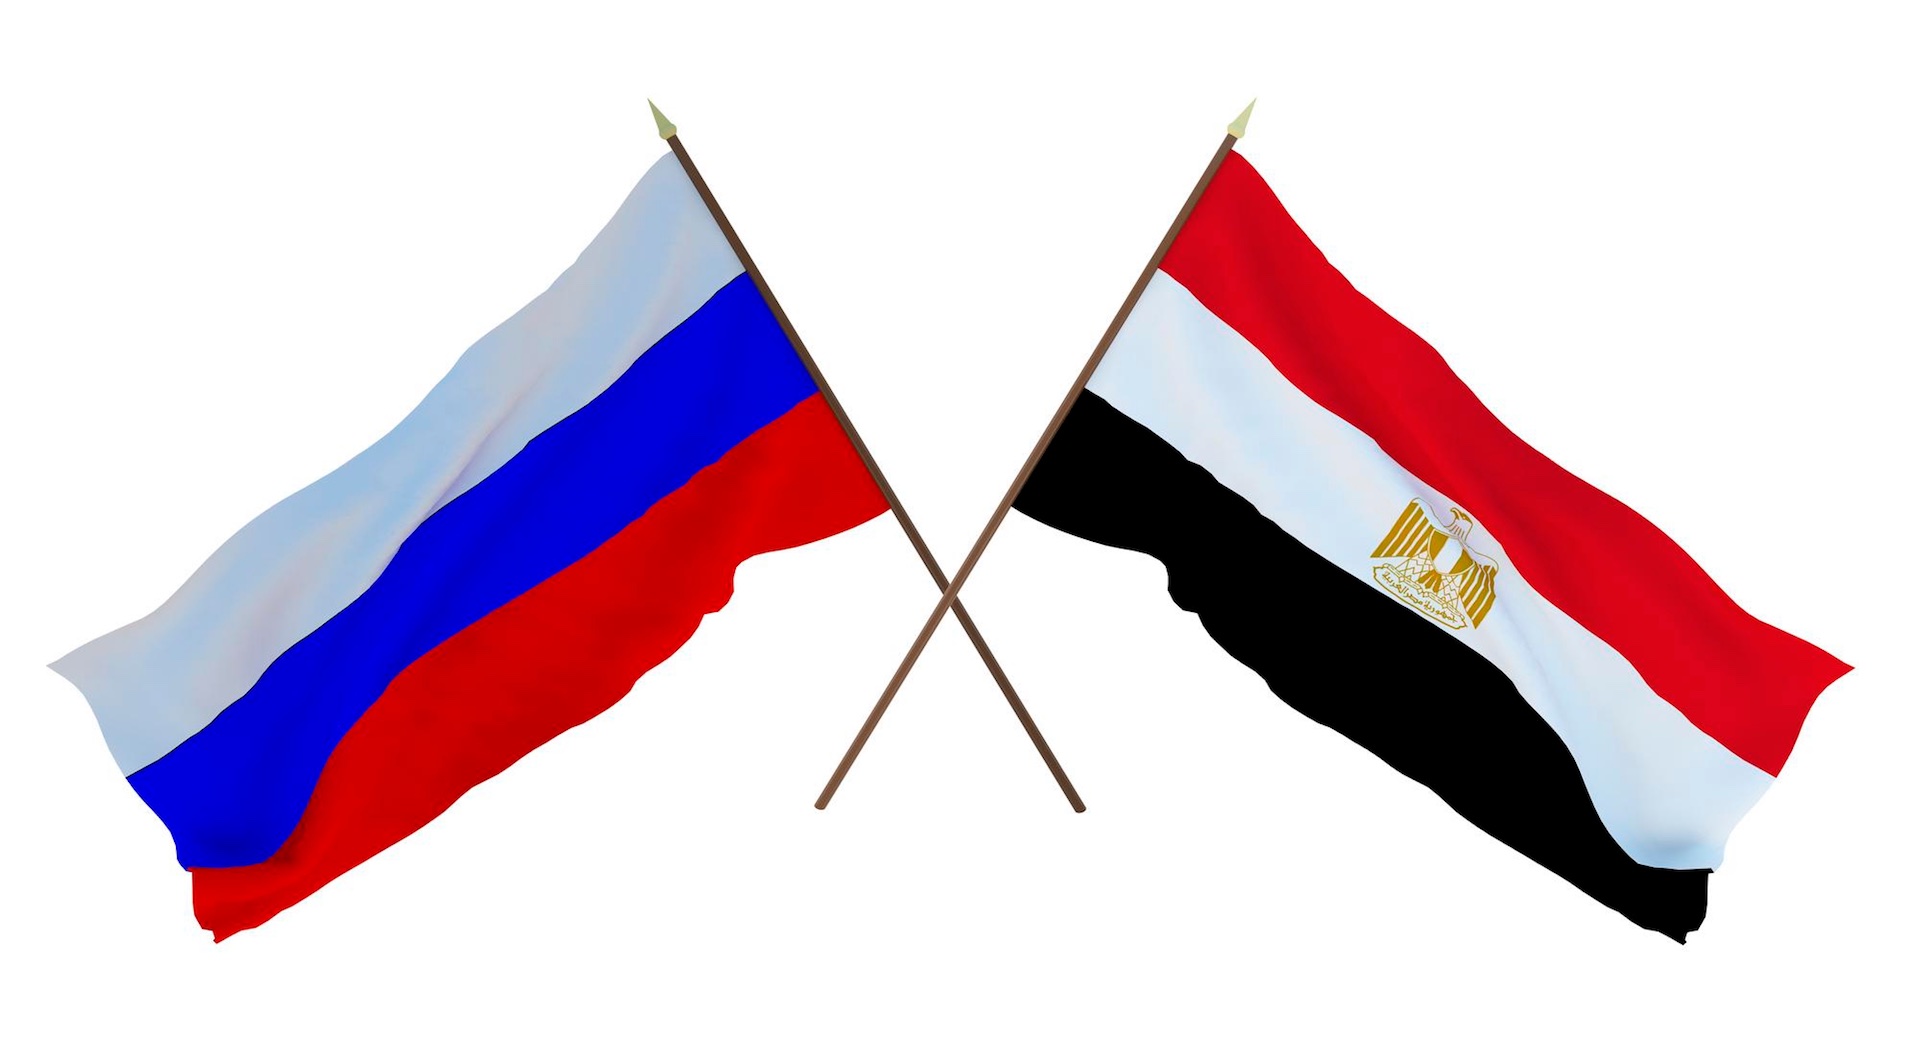 الرئيس الروسي فلاديمير بوتين: نعمل على تعزيز مشروعاتنا بمحطة الضبعة وقناة السويس في مصر